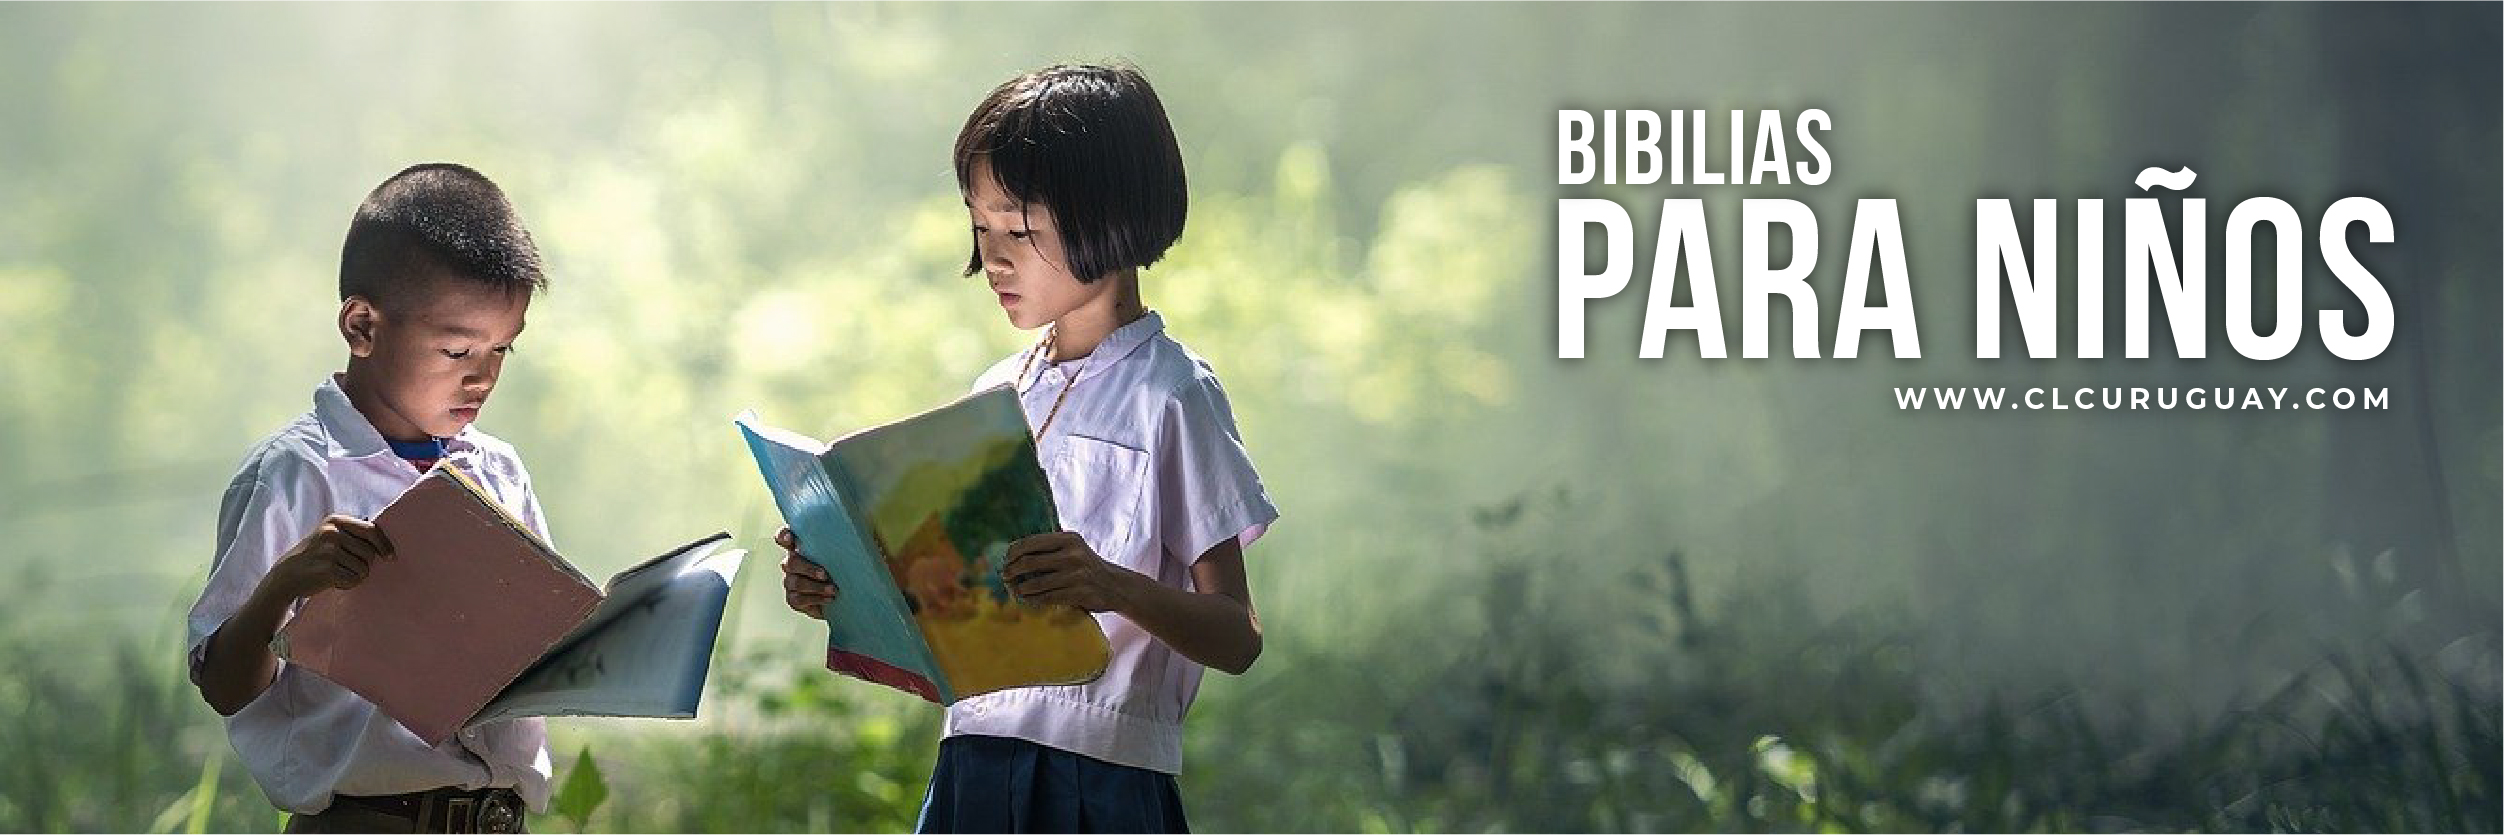 Biblias para niños